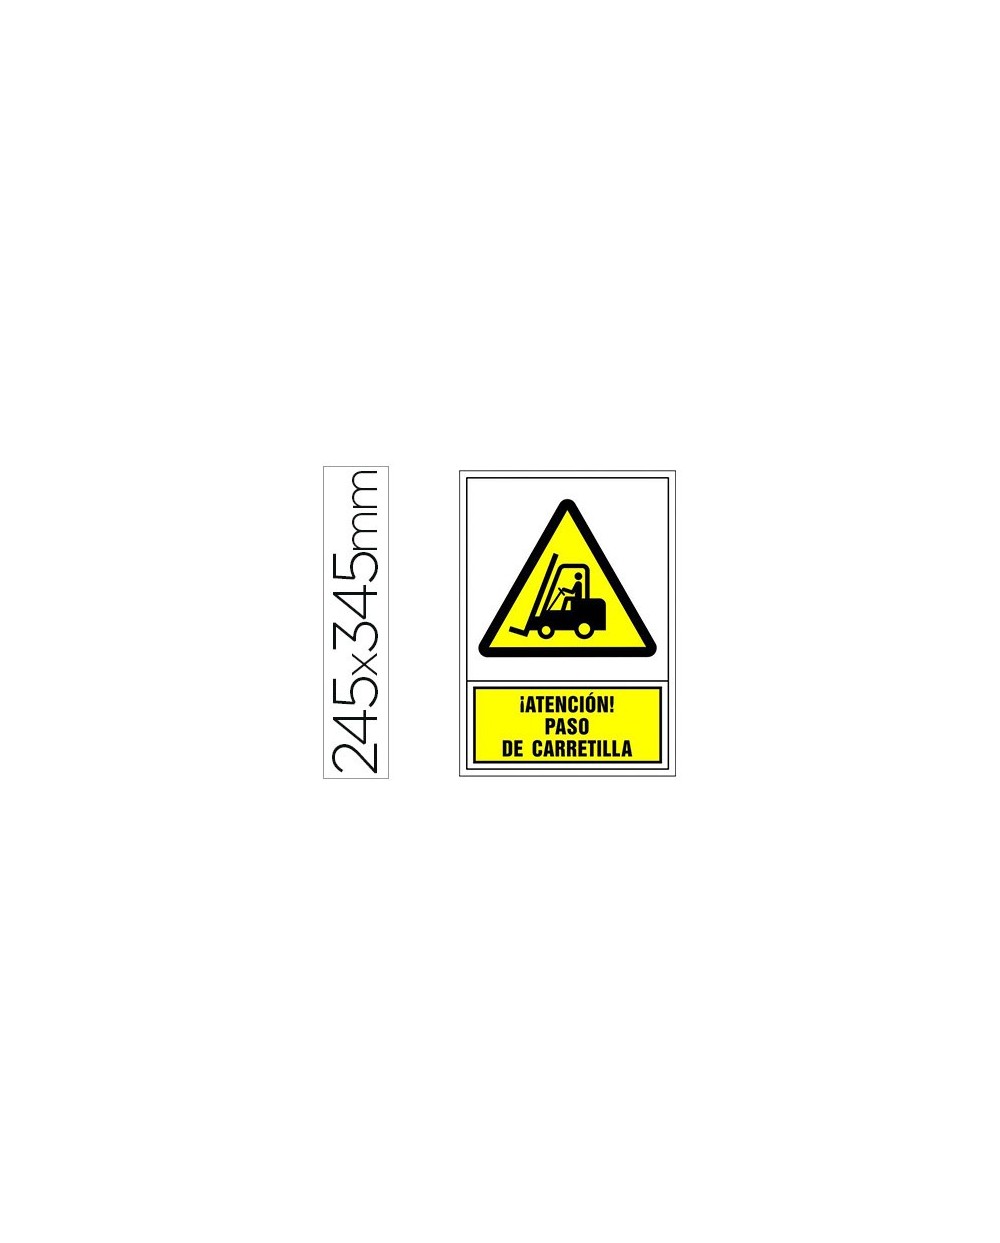 Pictograma syssa senal de advertencia atencion paso de carretilla en pvc 245x345 mm